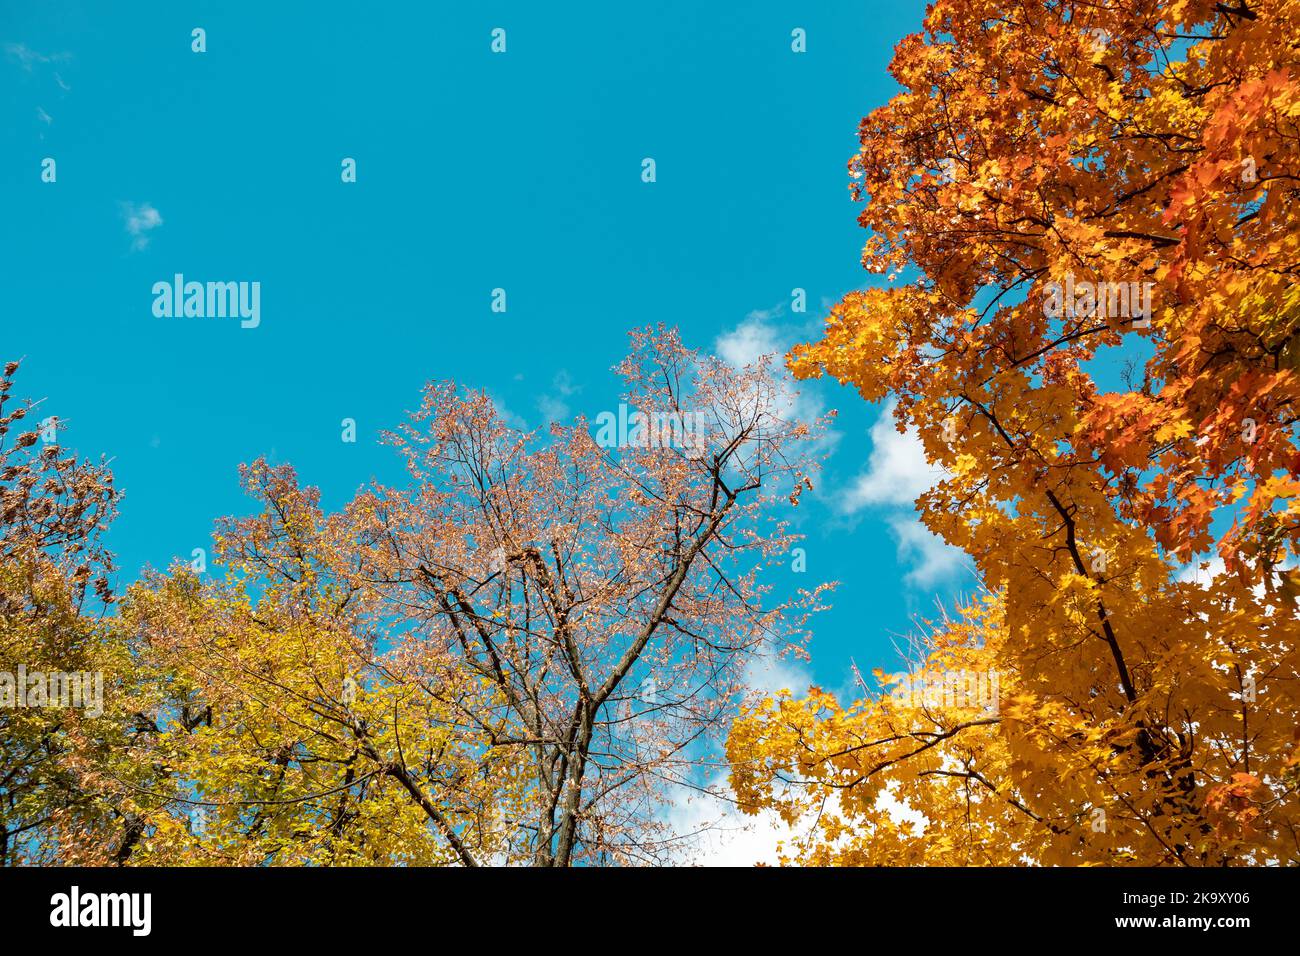 Regard sur la saison dorée de l'automne. Branches d'érable avec feuilles jaunes sur ciel bleu avec nuages, fond naturel automnal de la forêt Banque D'Images